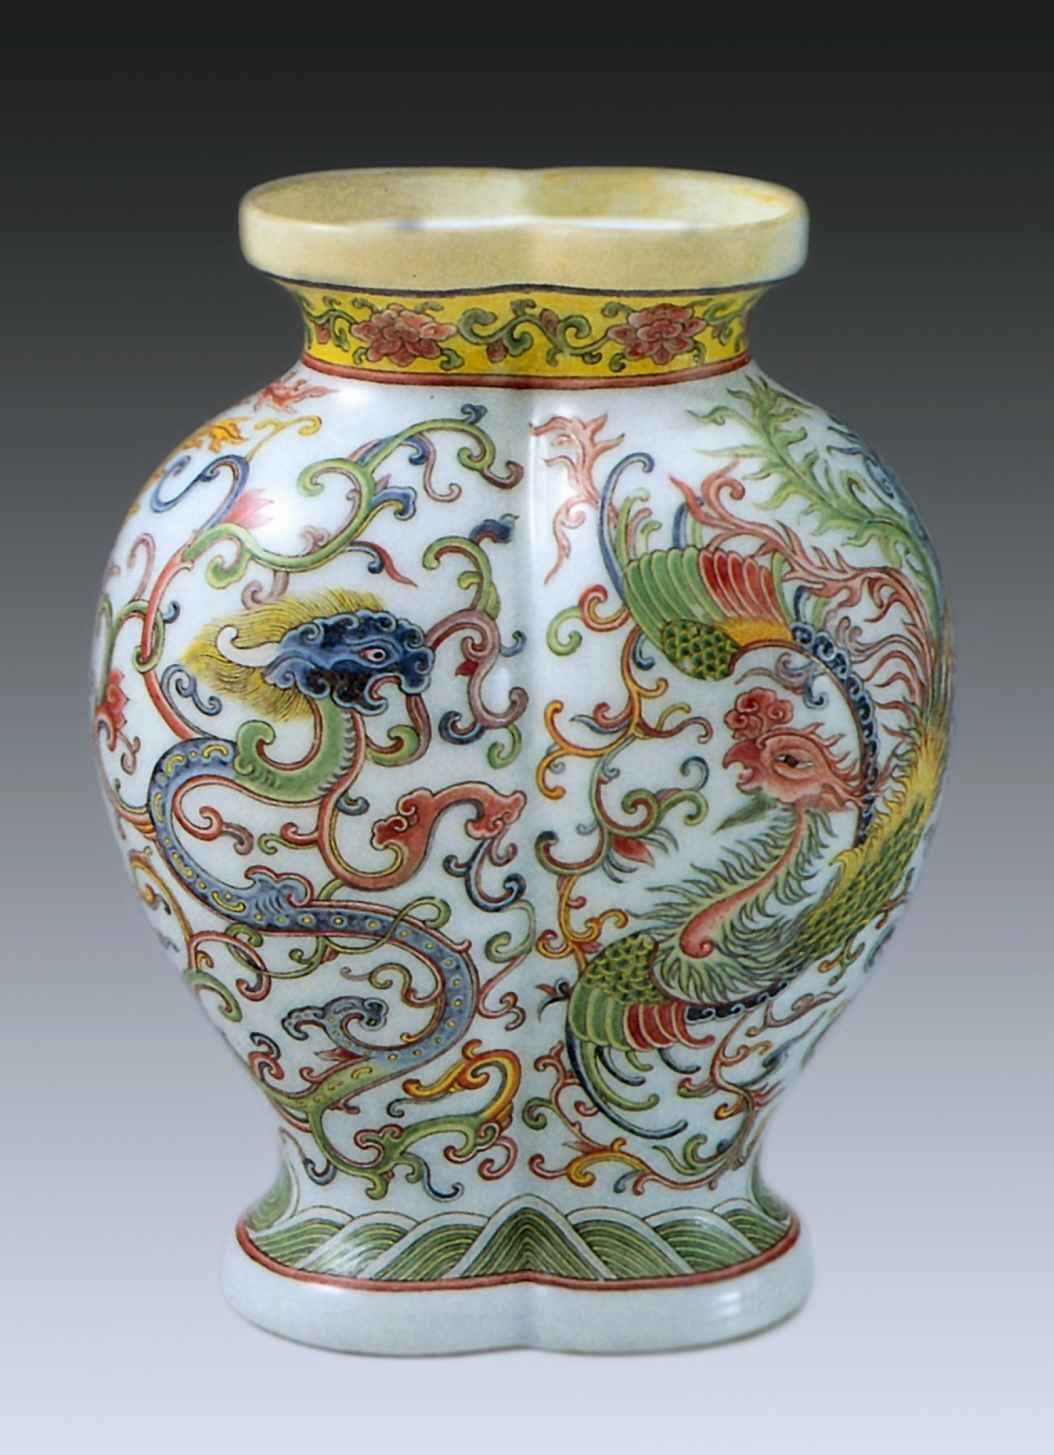 Ваза двудольной формы с изображением дракона и феникса <br>18 век <br>Фарфор, глазурь <br>Шанхай, Городской музей 